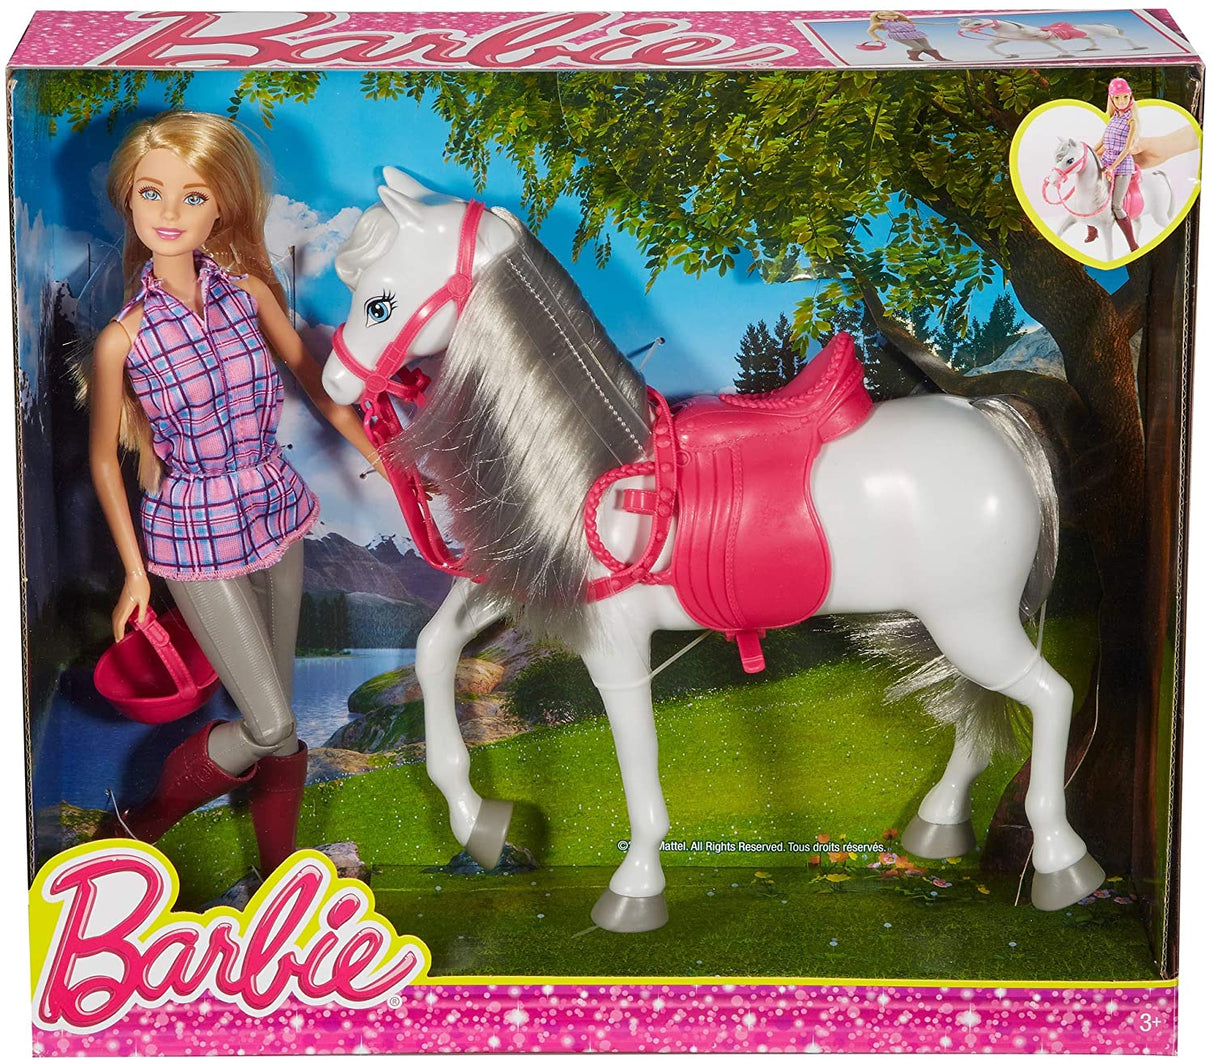 Barbie e seus cavalos - Barbie